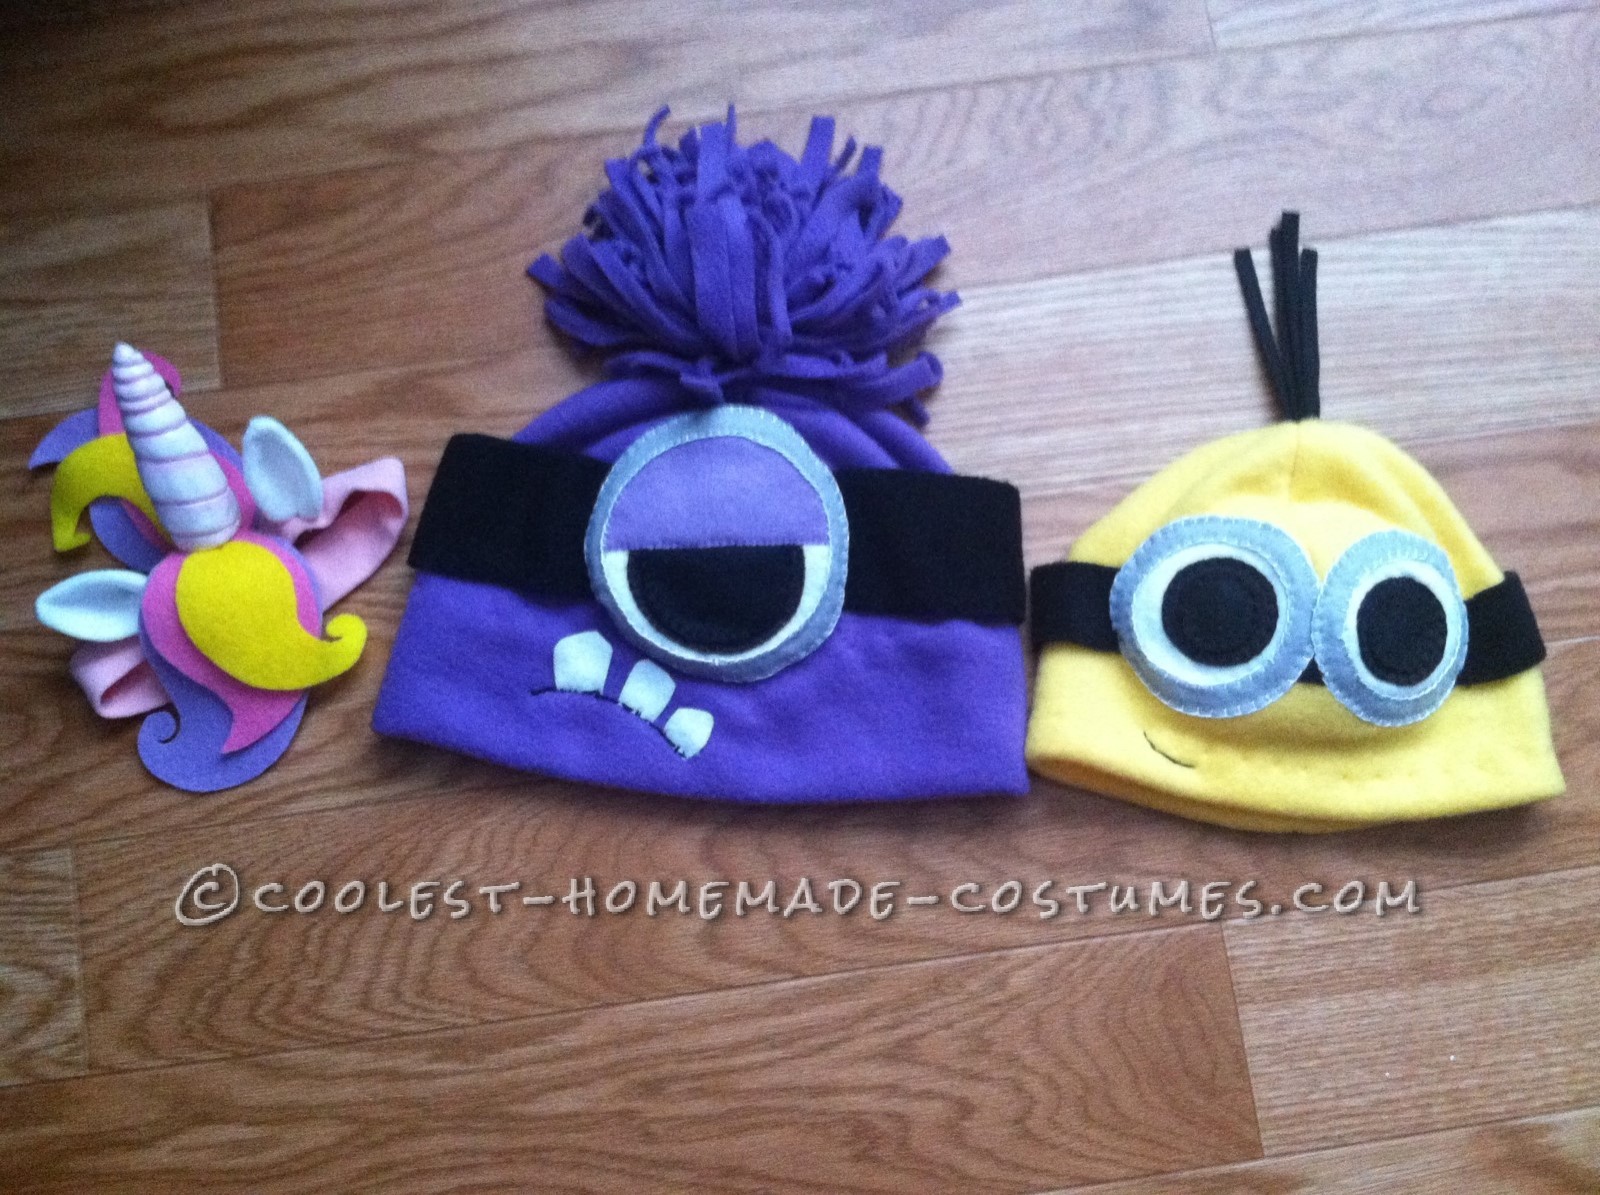 Minion Mania! A Full Family Homemade Costume Set